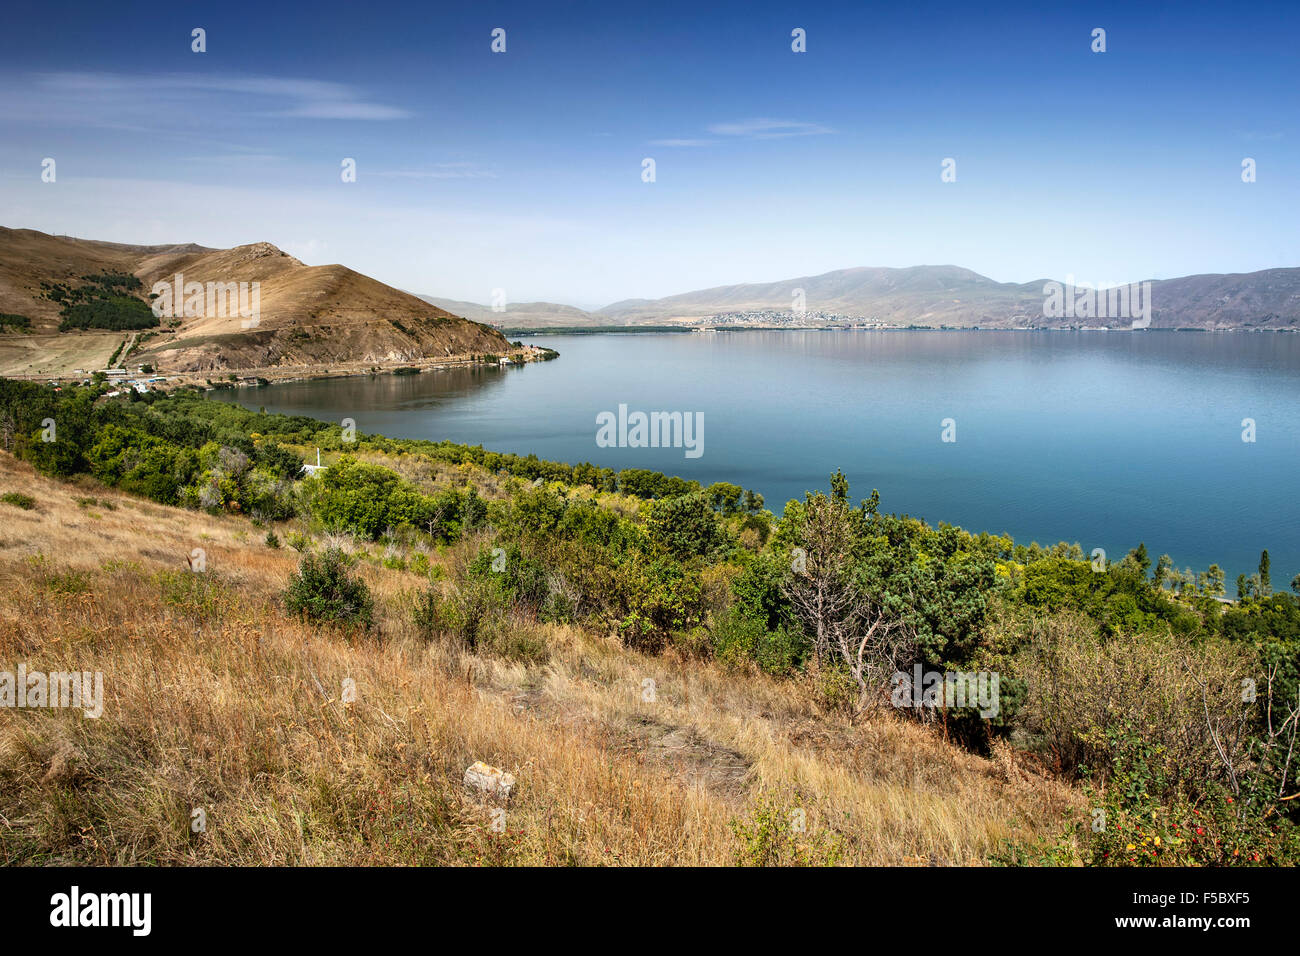 El lago Sevan visto desde el monasterio de Sevanavank en la provincia de Gegharkunik Armenia Foto de stock